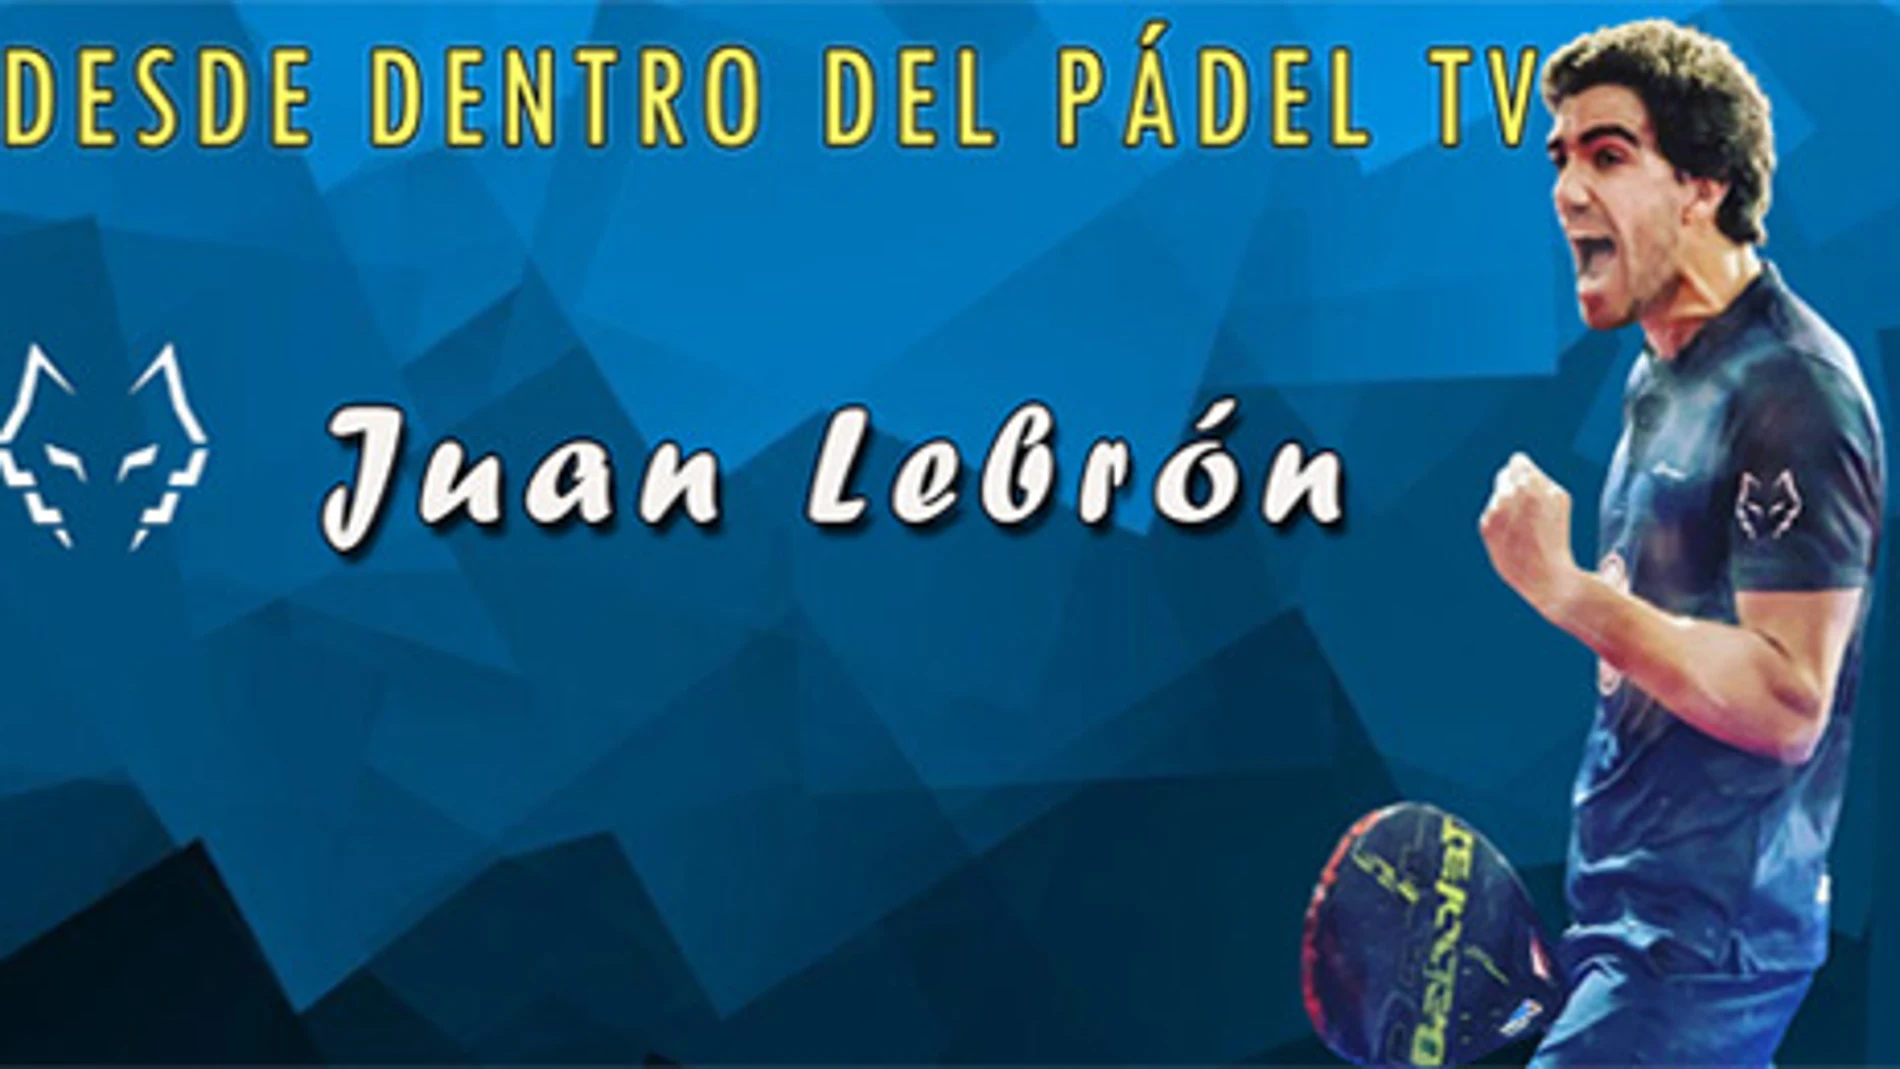 Segunda parte del episodio Desde Dentro del Pádel con Juan Lebrón.